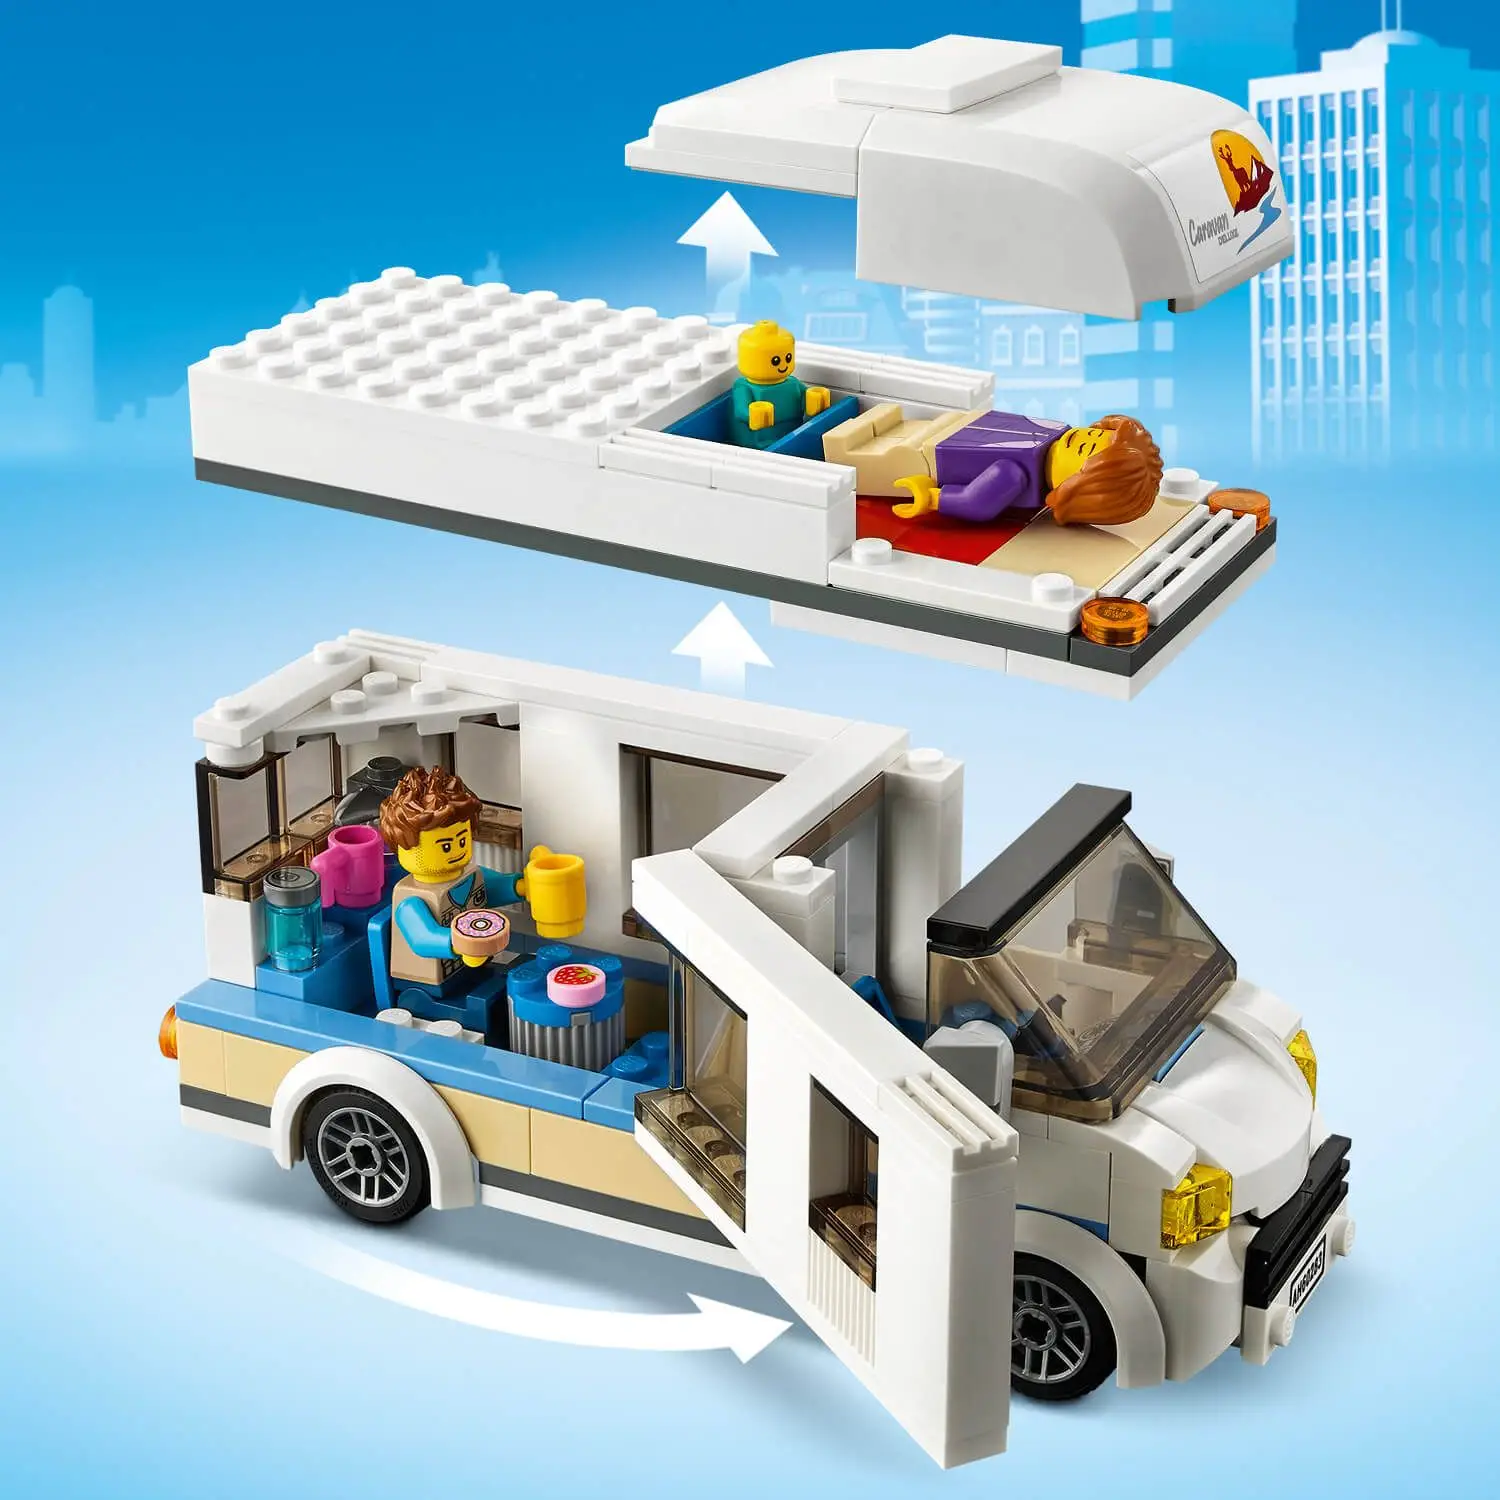 LEGO City Great Vehicles 60283 Prázdninový karavan